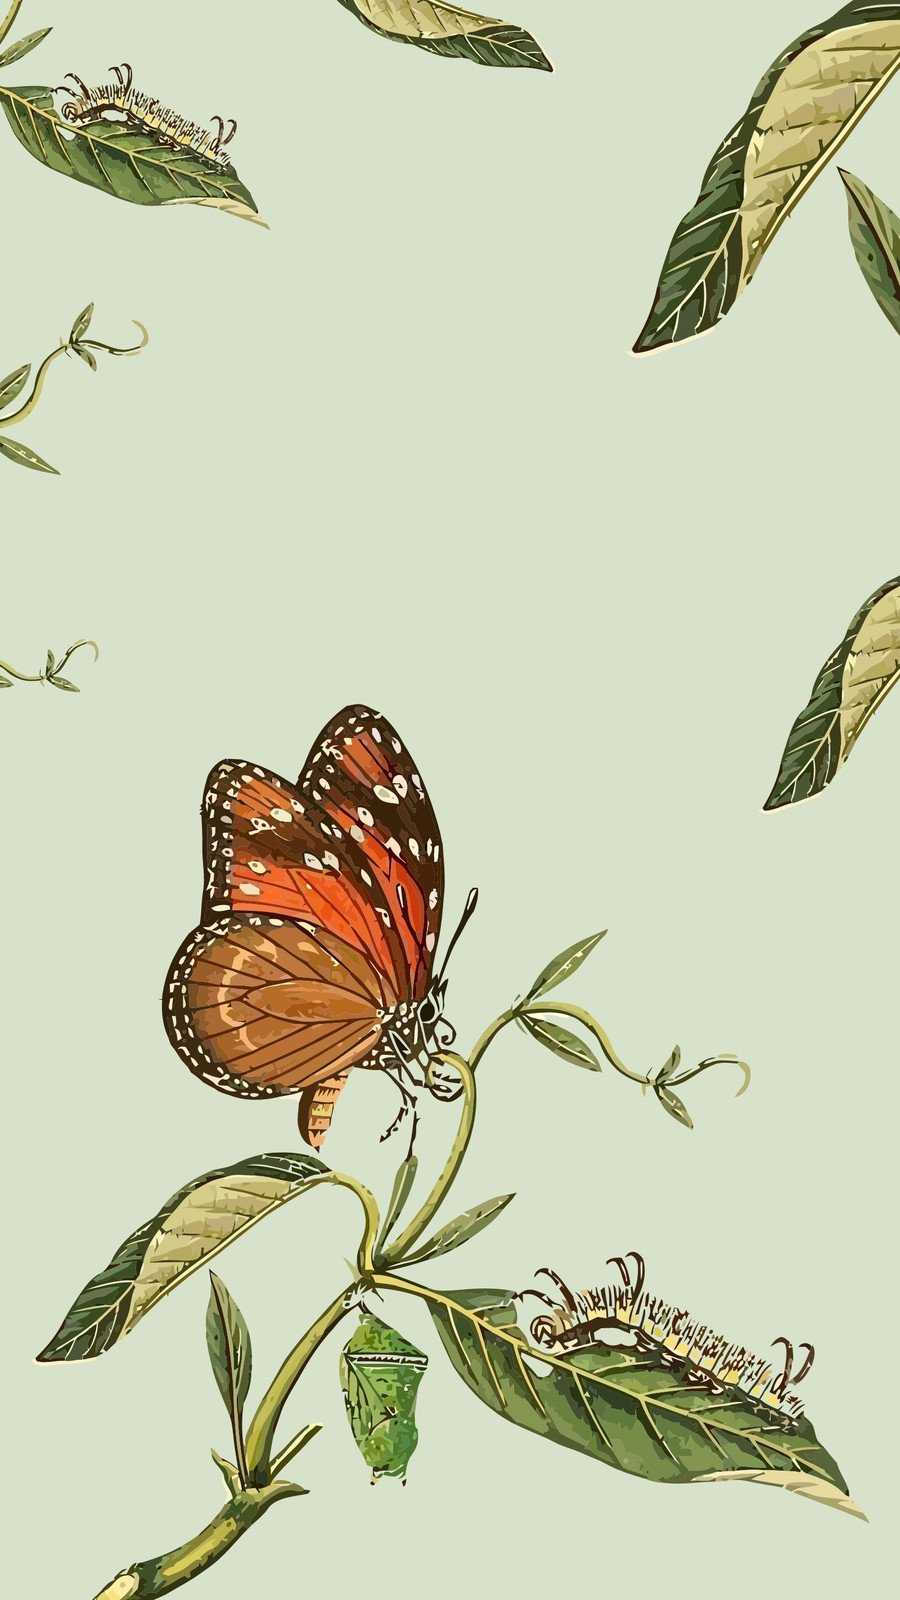 green butterflies wallpaper